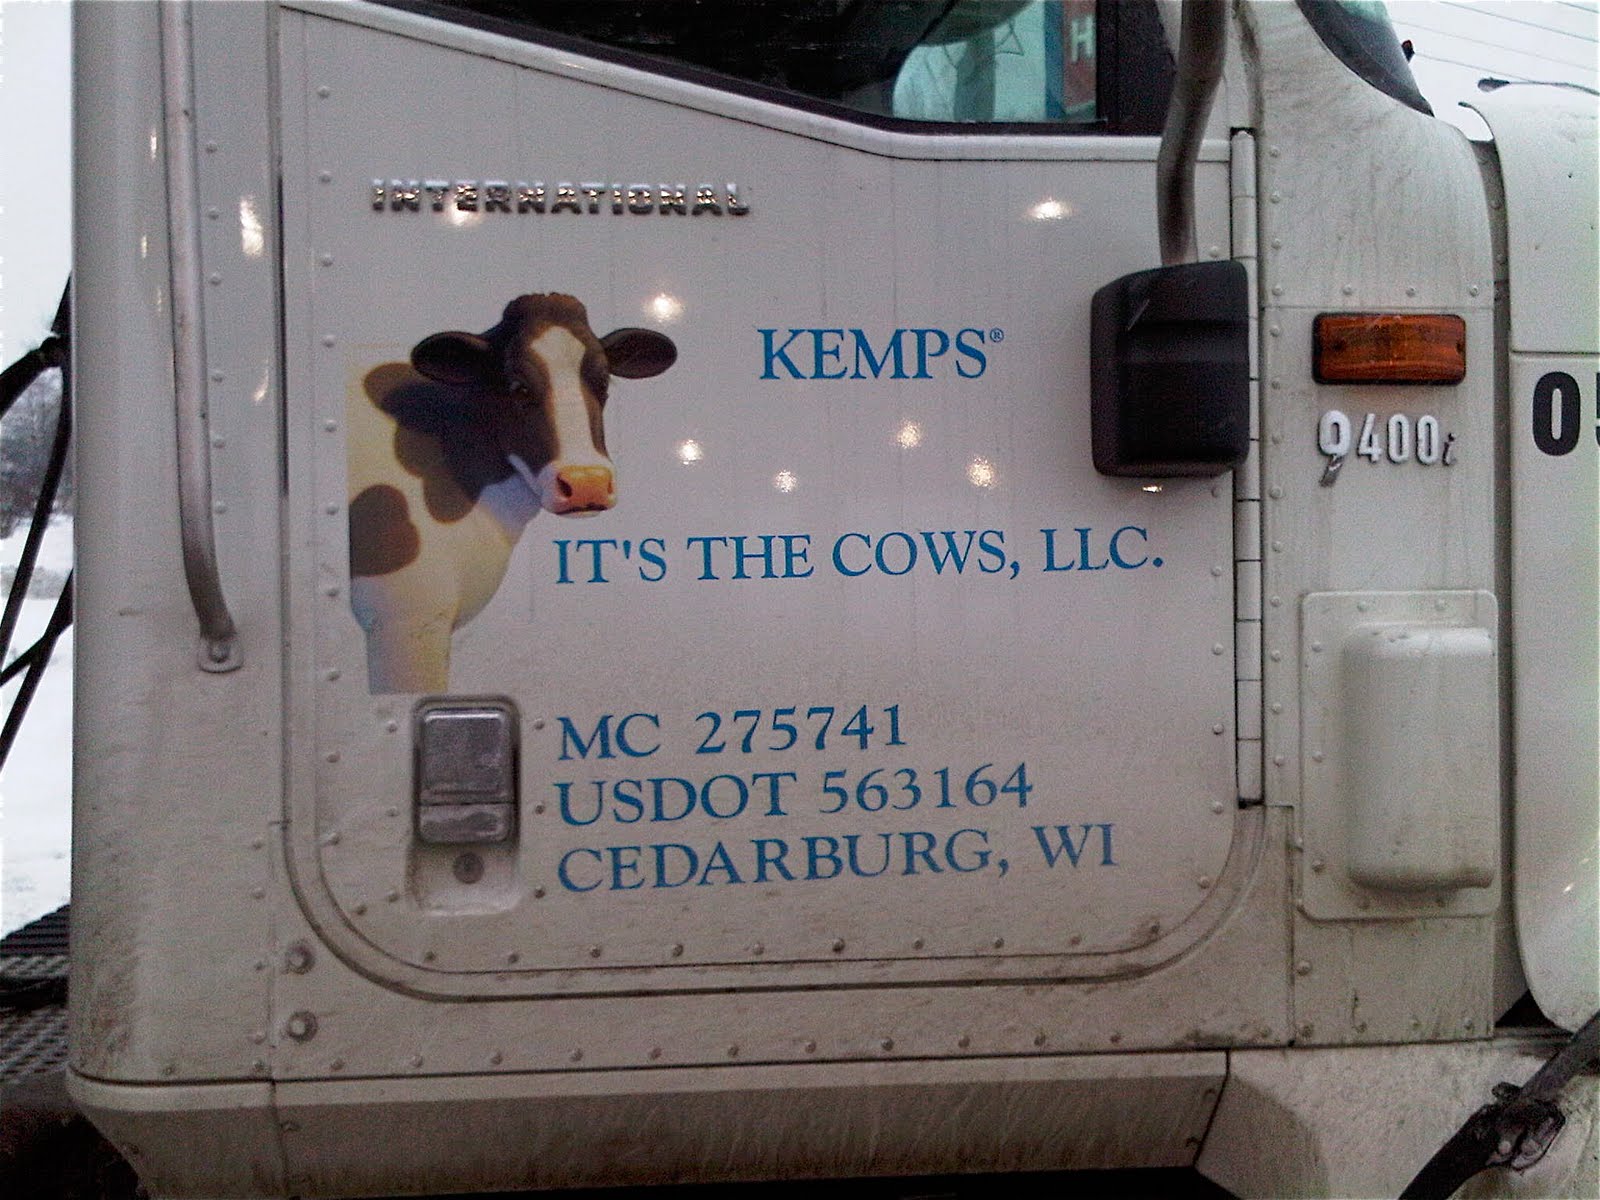 [cows+on+truck+door.jpg]